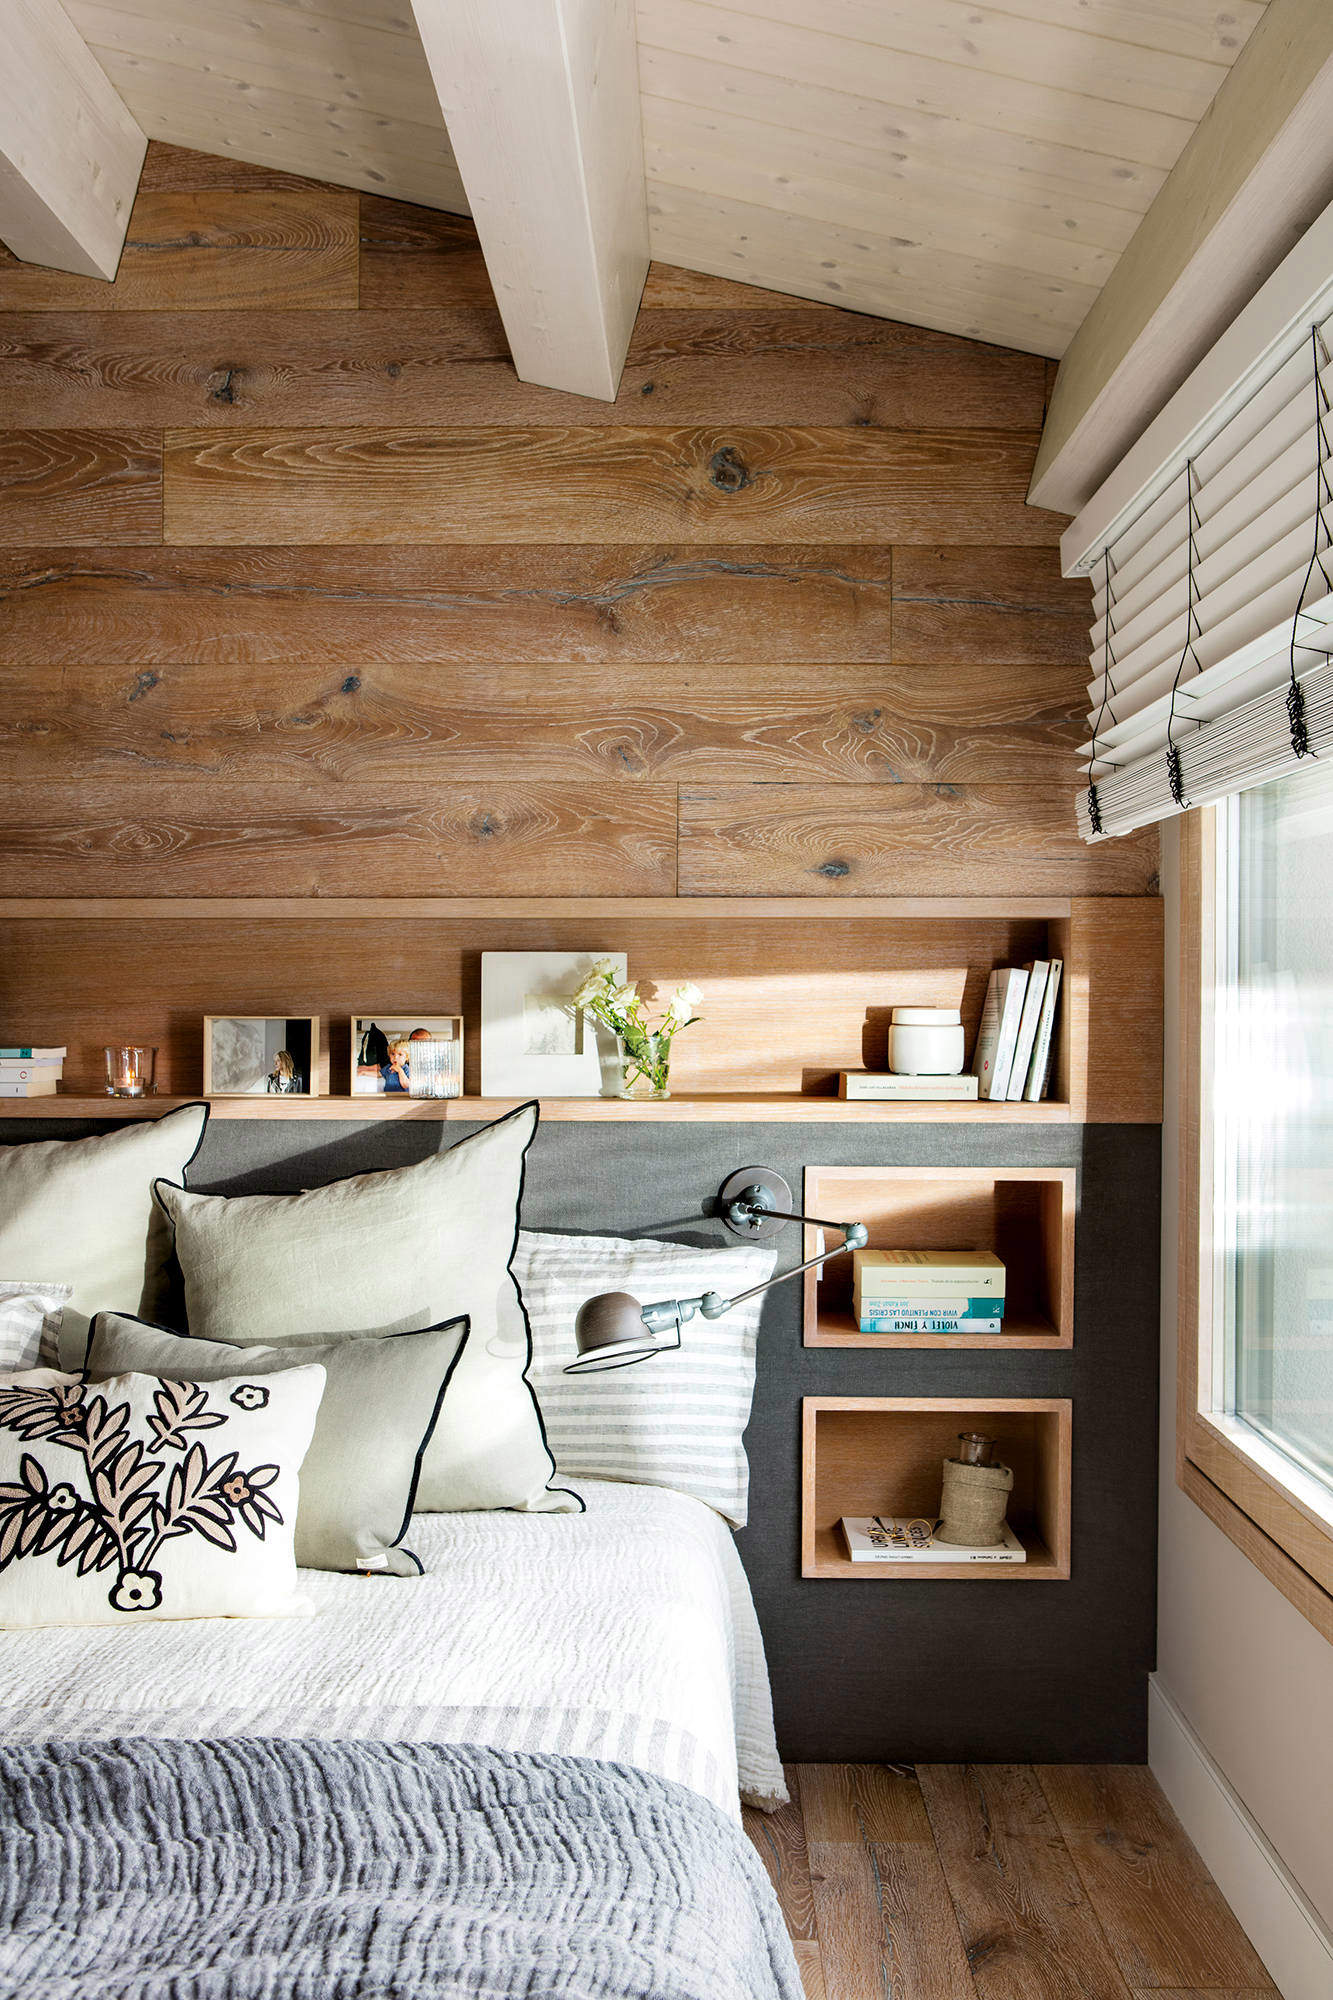 Dormitorio de madera con cabecero de obra y flexo articulado.